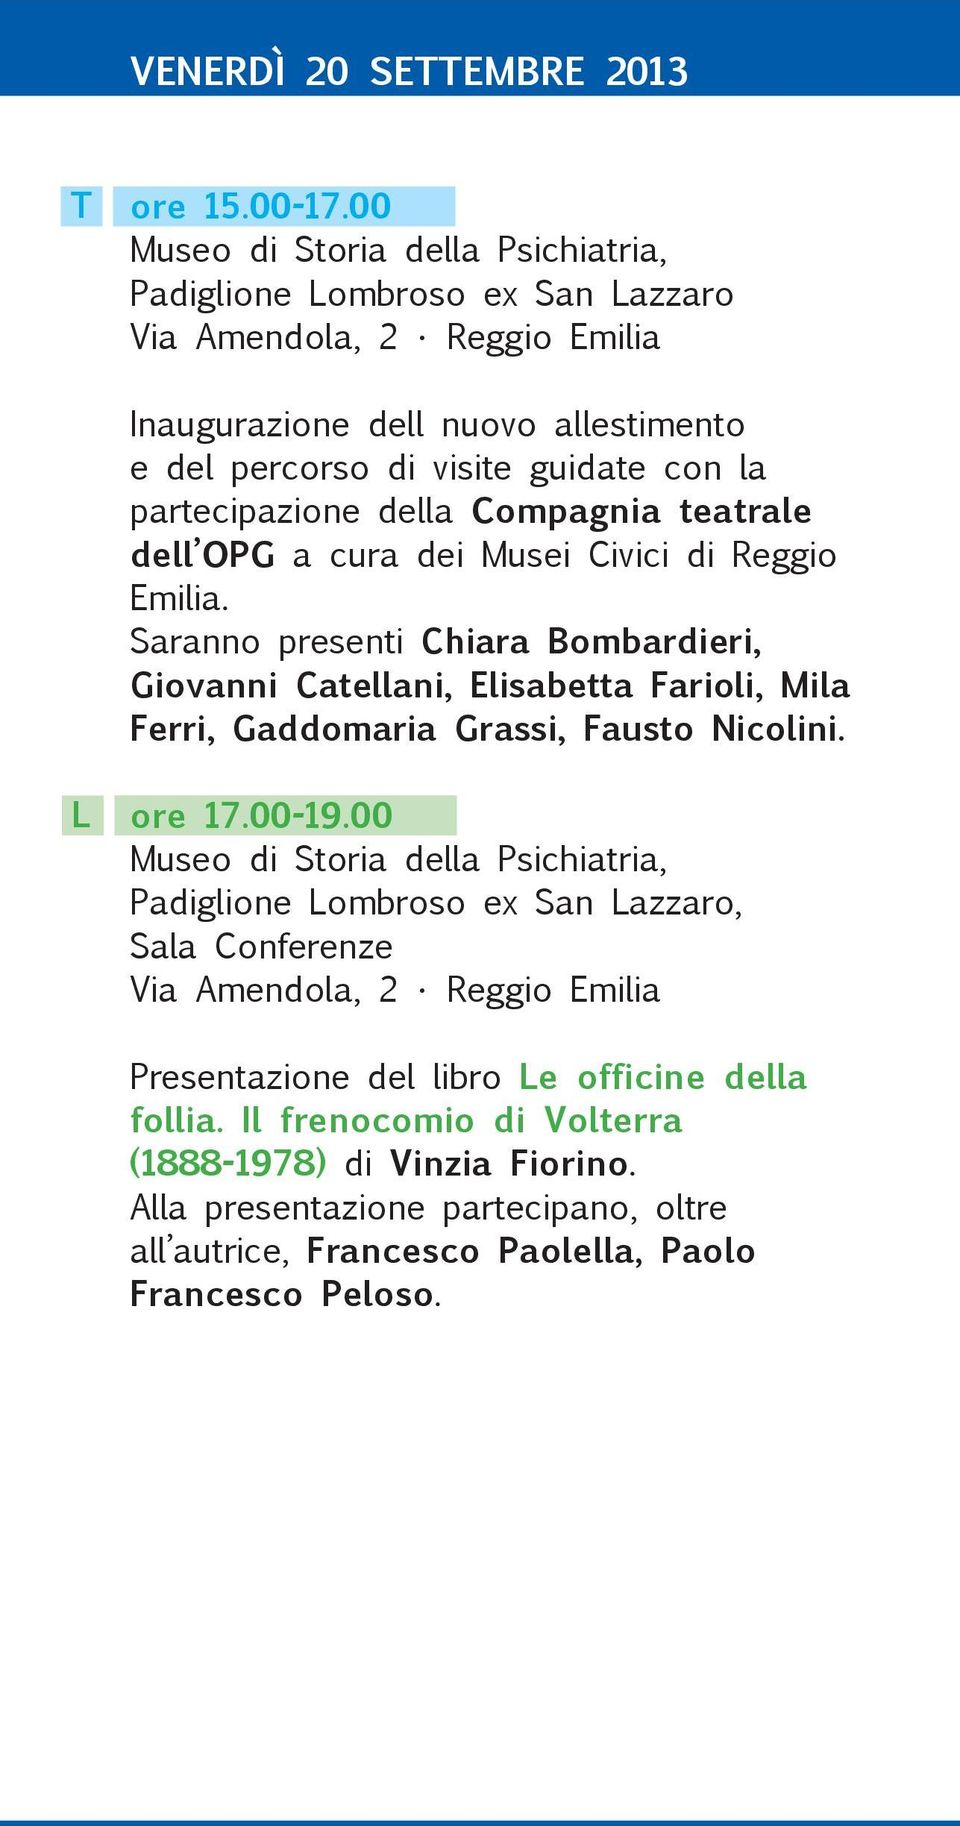 partecipazione della Compagnia teatrale dell OPG a cura dei Musei Civici di Reggio Emilia.